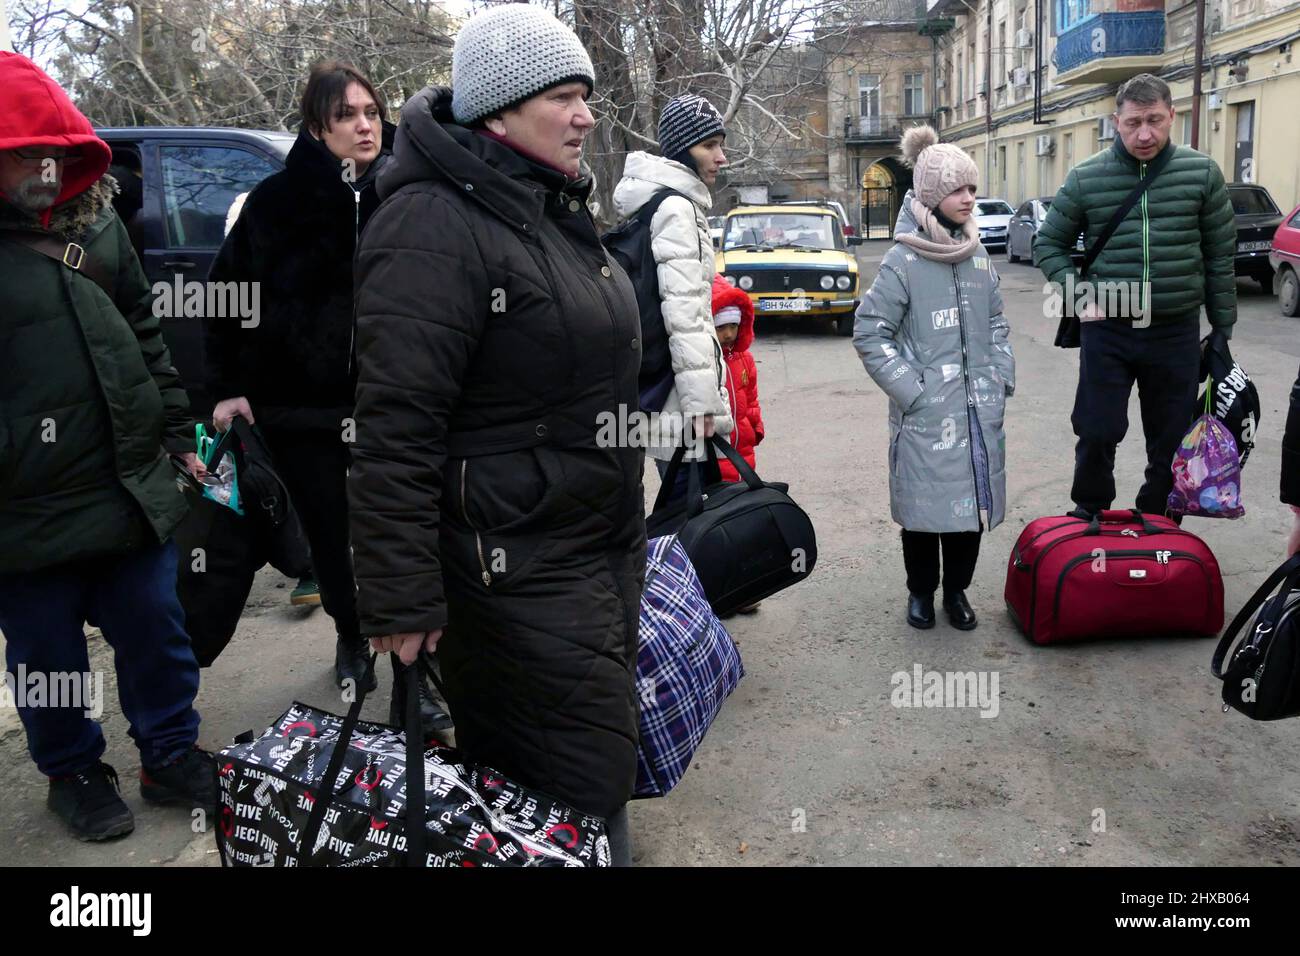 ODESA, UKRAINE - 10. MÄRZ 2022 - Menschen, die vor der russischen Invasion fliehen, halten ihre Habseligkeiten in der Hand, da kostenlose Evakuierungsbusse sie zum Bord bringen sollen Stockfoto